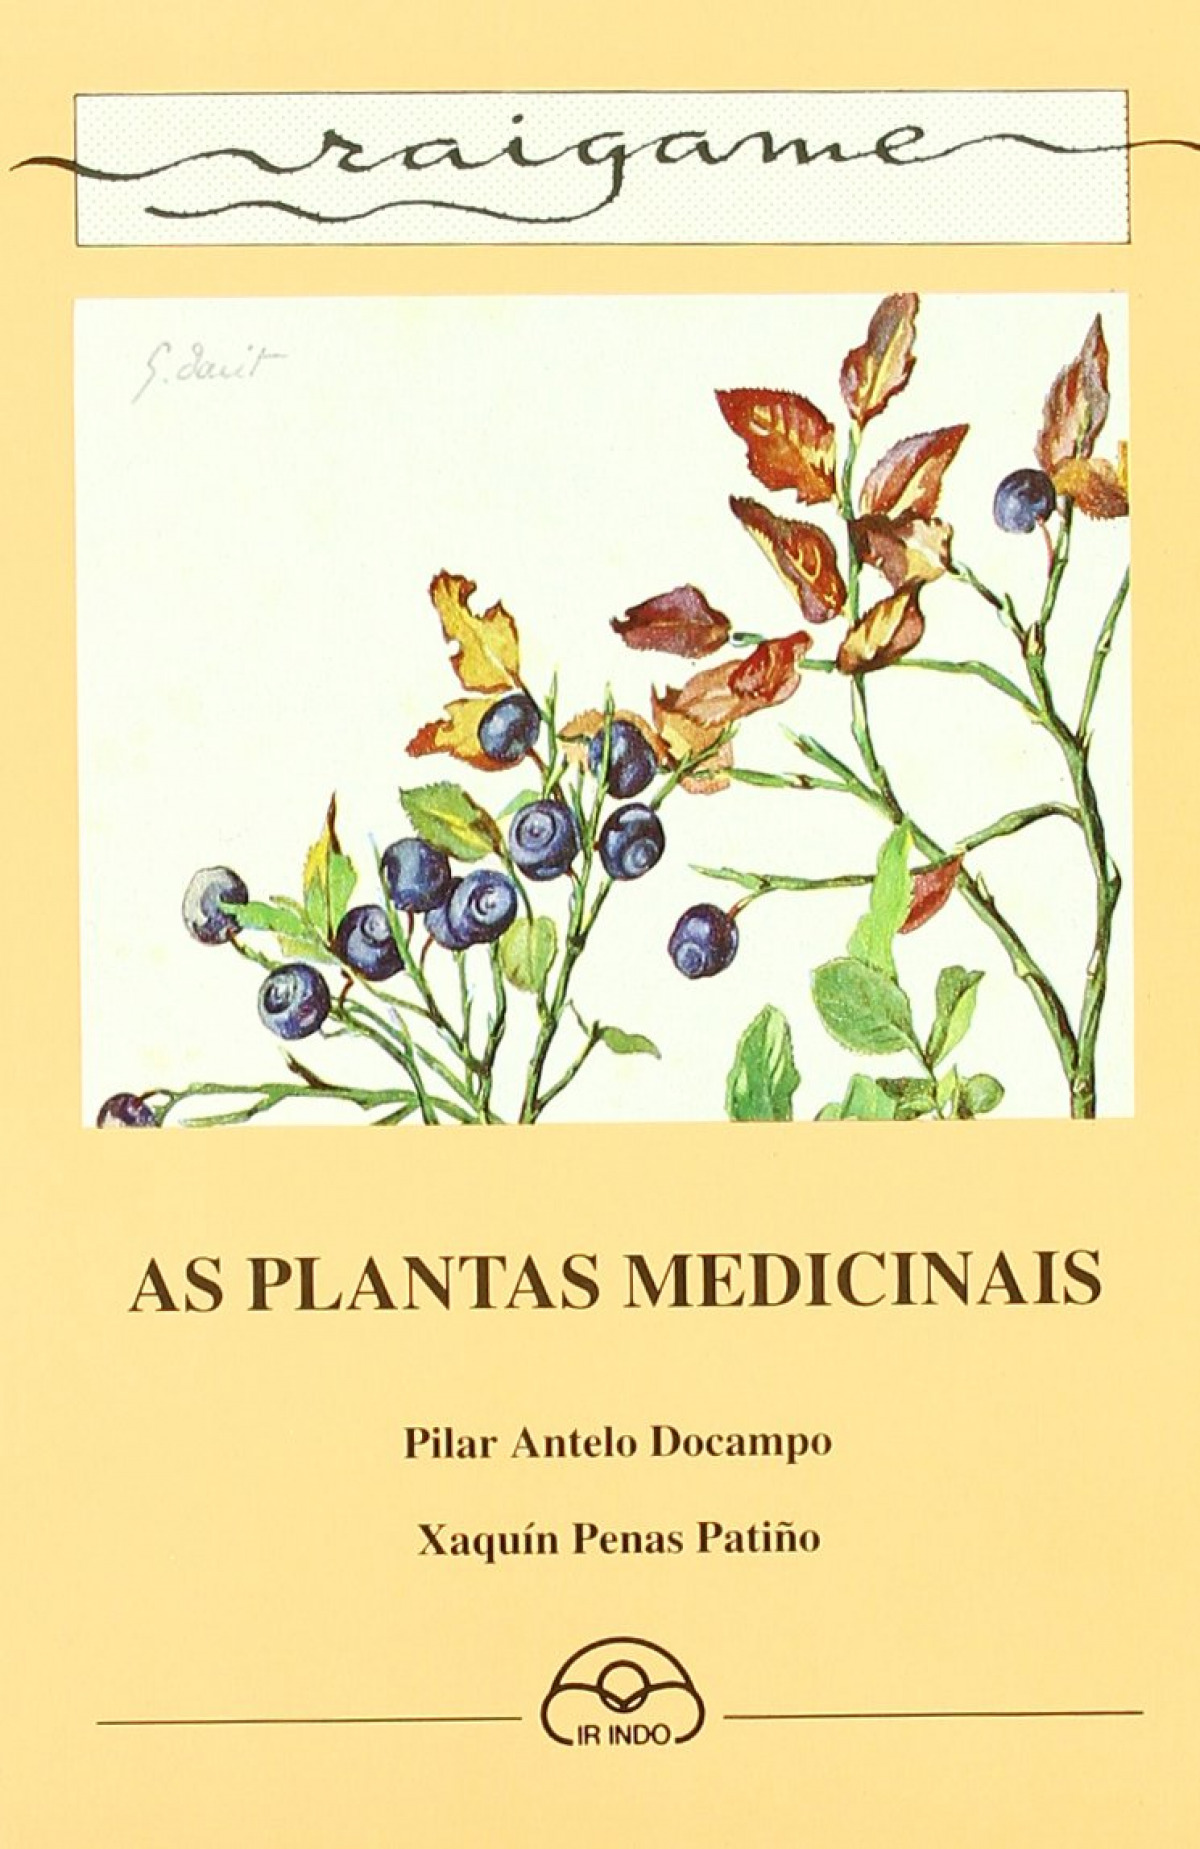 As plantas medicinais - Antelo Docampo, Pilar/Penas Patiño, Xaquín